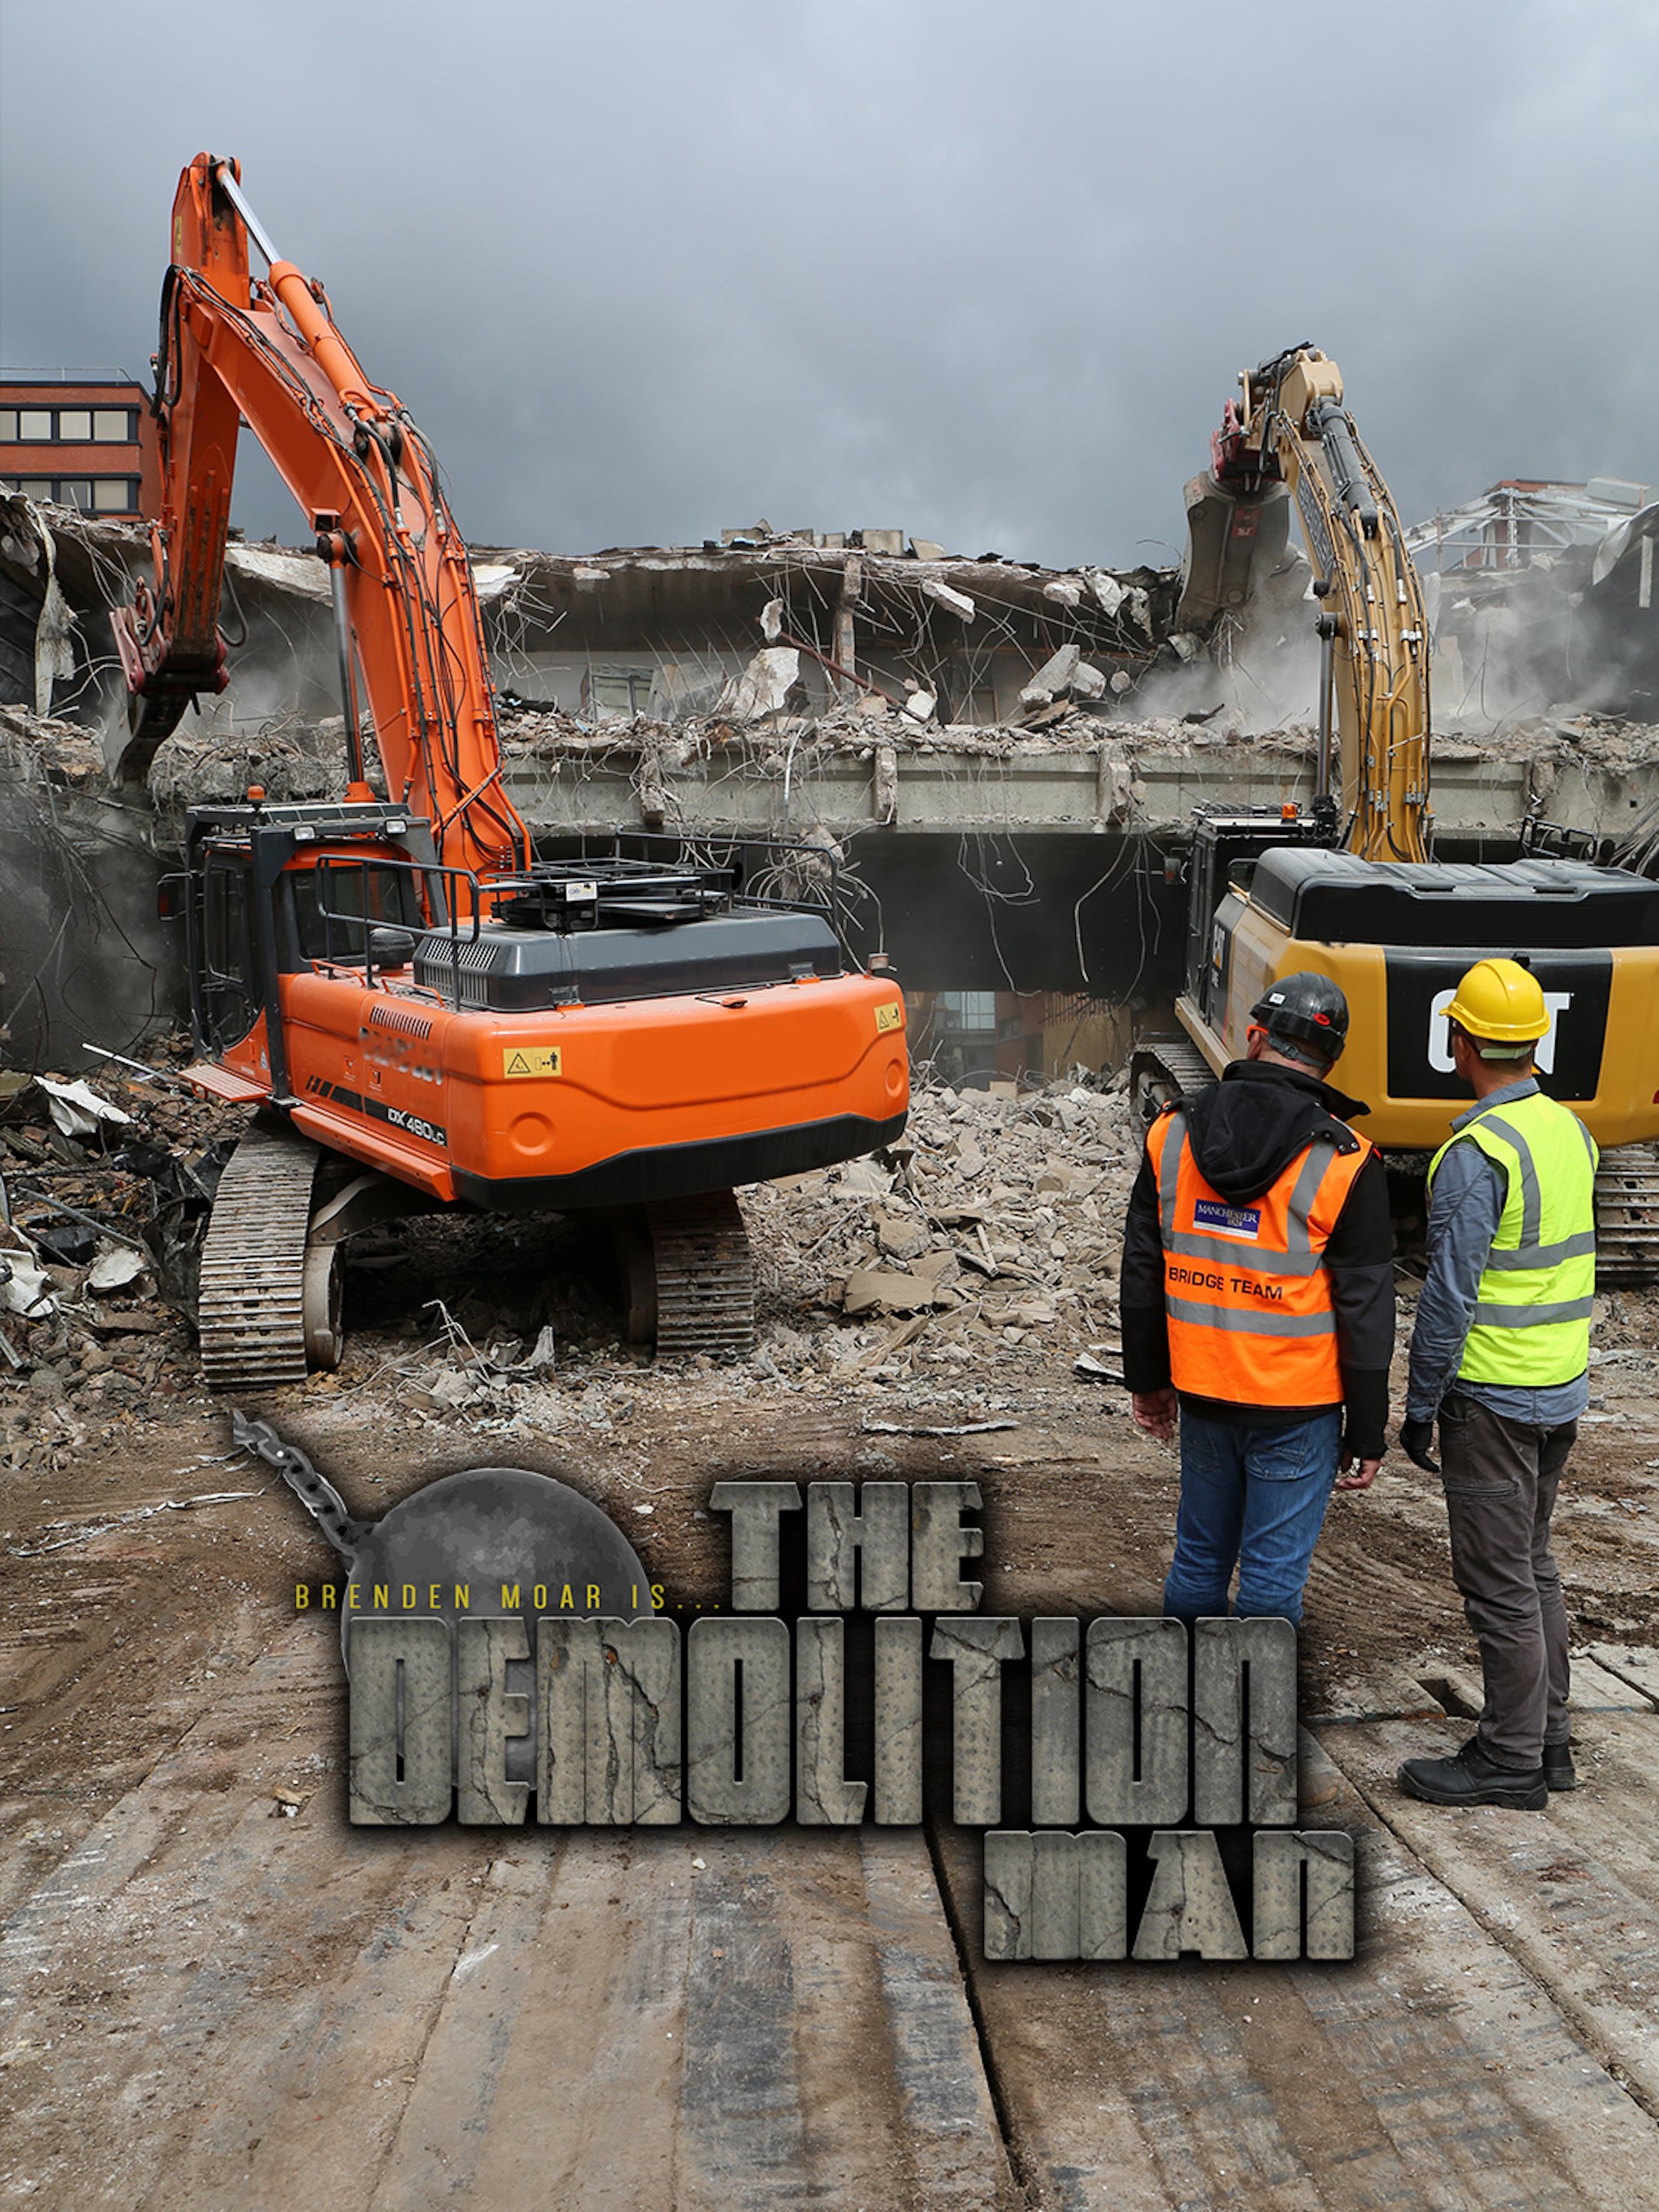 The_Demolition_Man_portrait.jpg